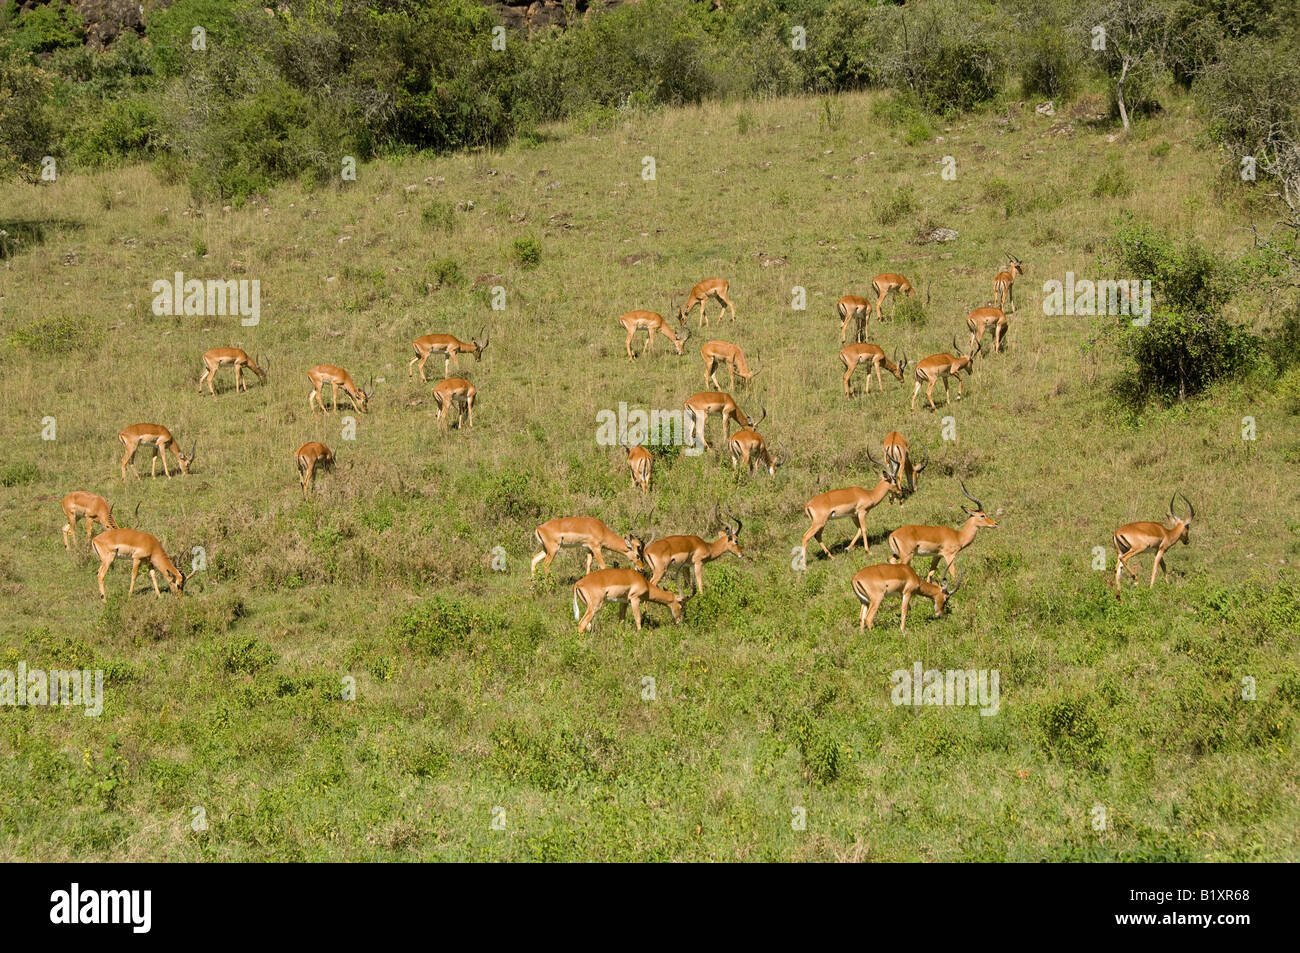 Impalas, Kenya, Africa Stock Photo